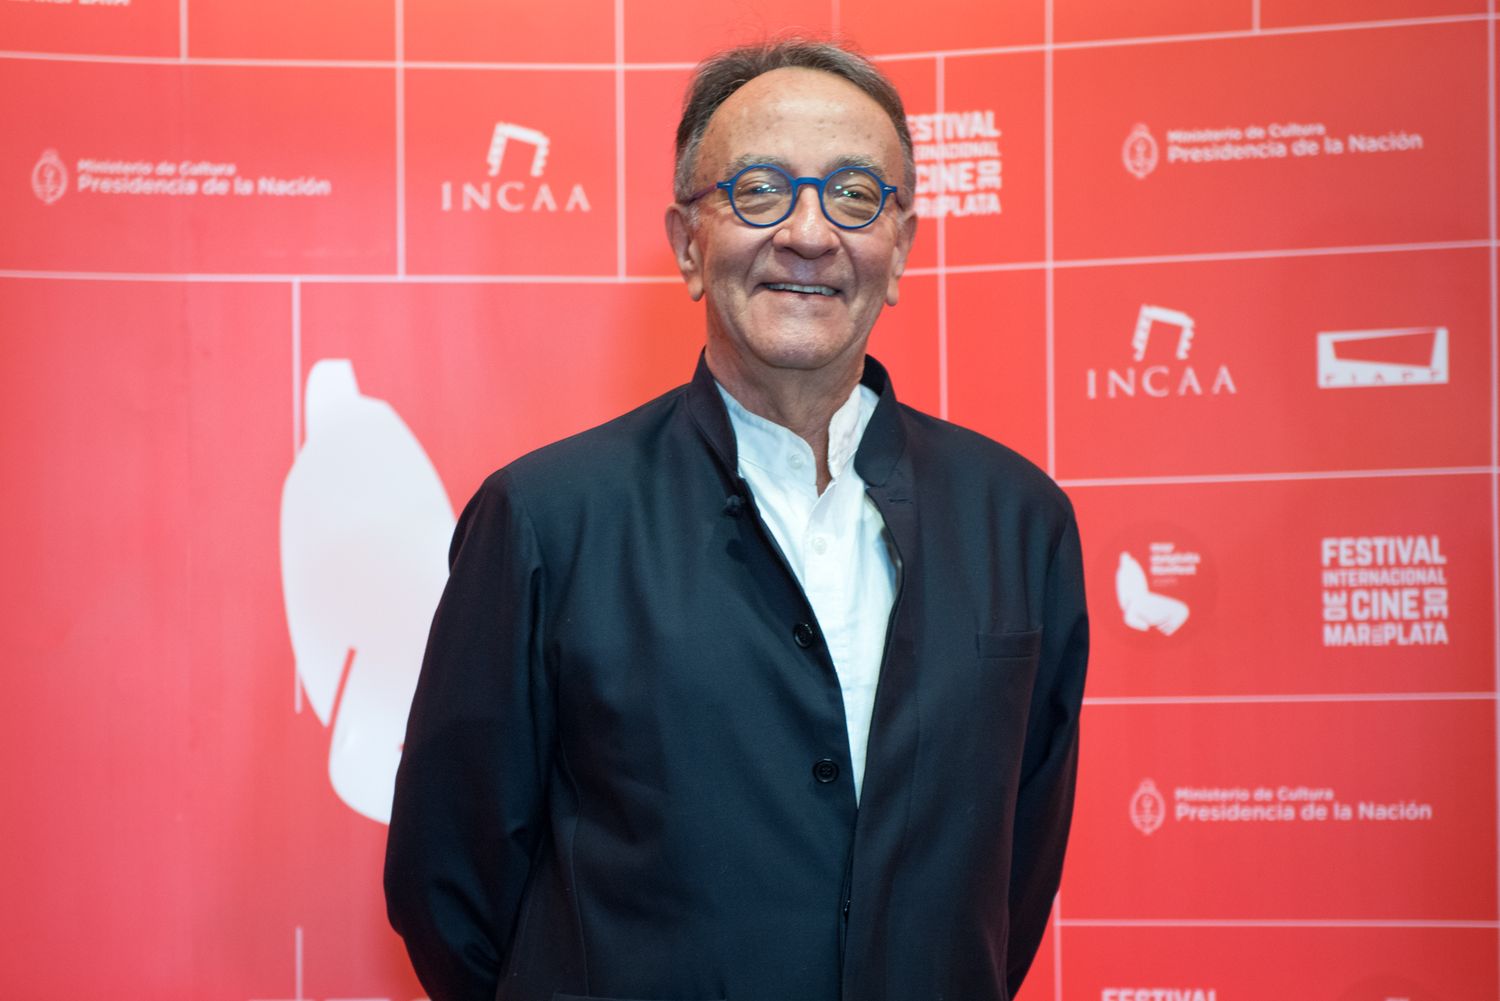 Peter Scarlet, la carrera del director artístico del Festival de Cine